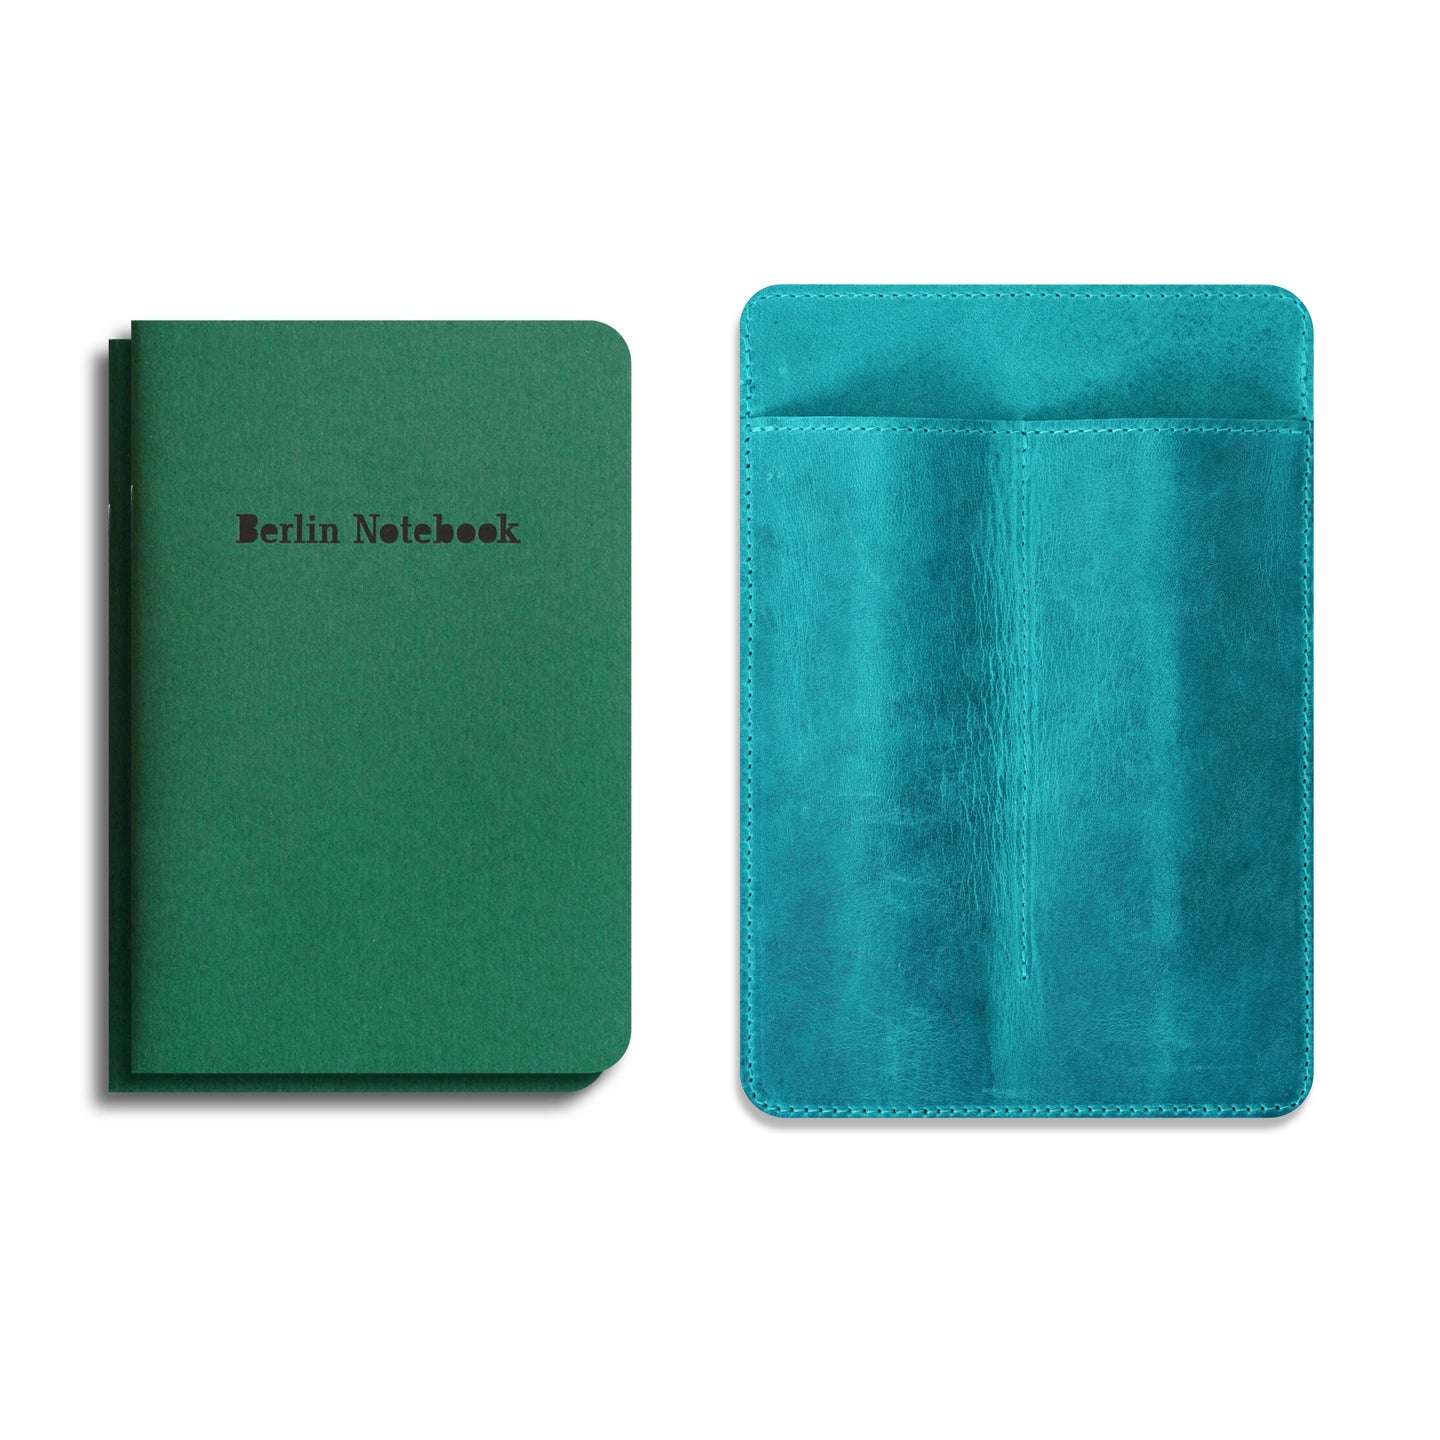 „Stift & Notizbuch Lederhülle“ + 2er-Pack Berlin Notebook Green Edition Geschenkset